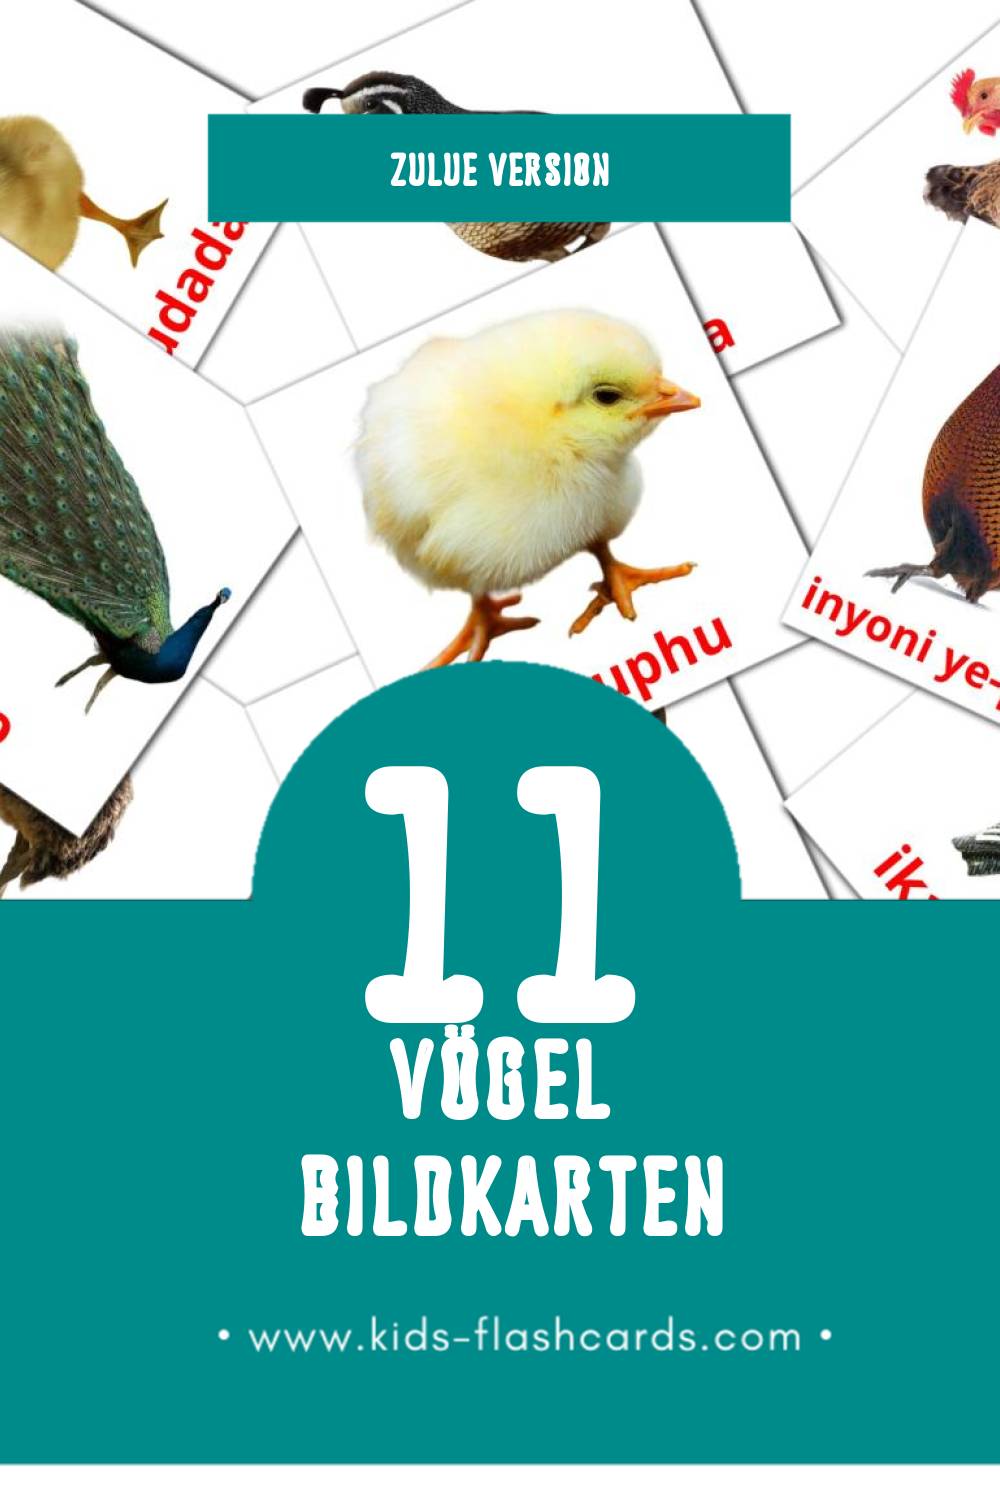 Visual Inyoni Flashcards für Kleinkinder (11 Karten in Zulu)